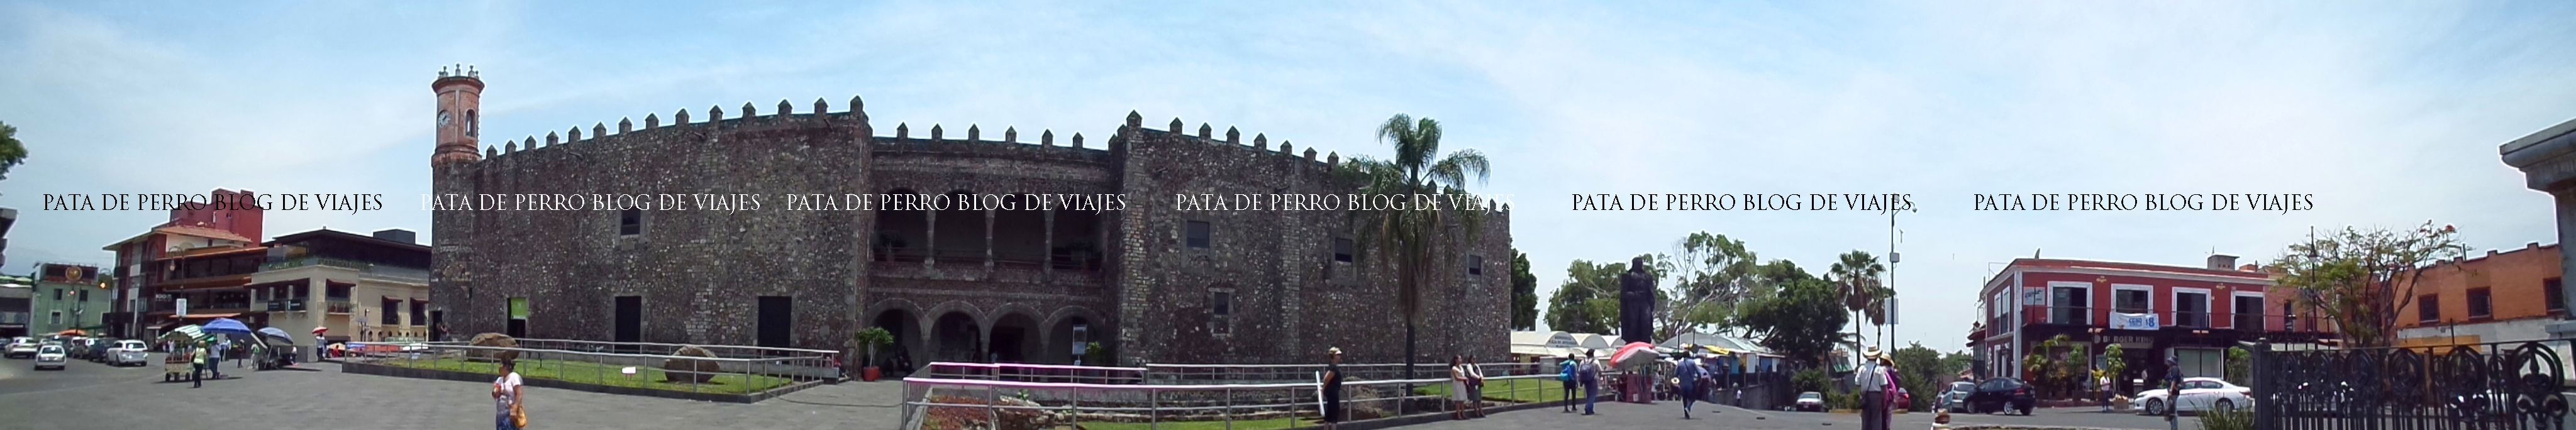 palacio de cortés cuernavaca cuauhnahuac morelos mexico pata de perro blog de viajes27